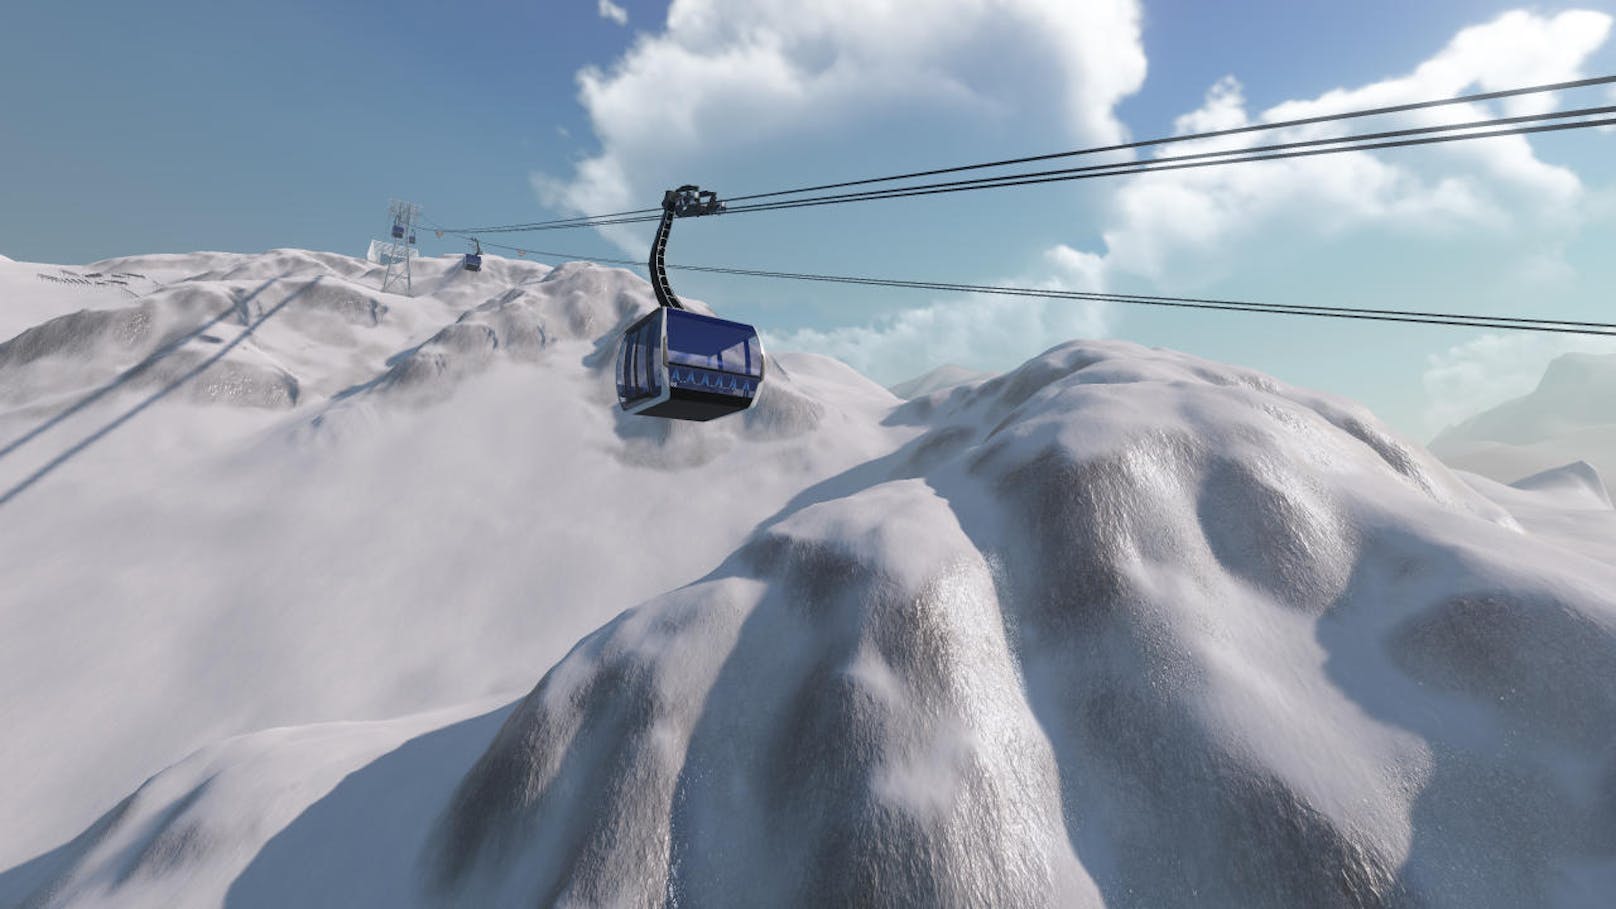 Das Konzept des "Winter Resort Simulator" ist einfach: Als Spieler soll man sich sein eigenes Ski-Gebiet aufbauen und es managen. Das reicht vom richtigen Tempo von Seilbahnen über das Beschneien der Pisten bis hin zum Steuern von Pistenraupen und Schneemobilen.